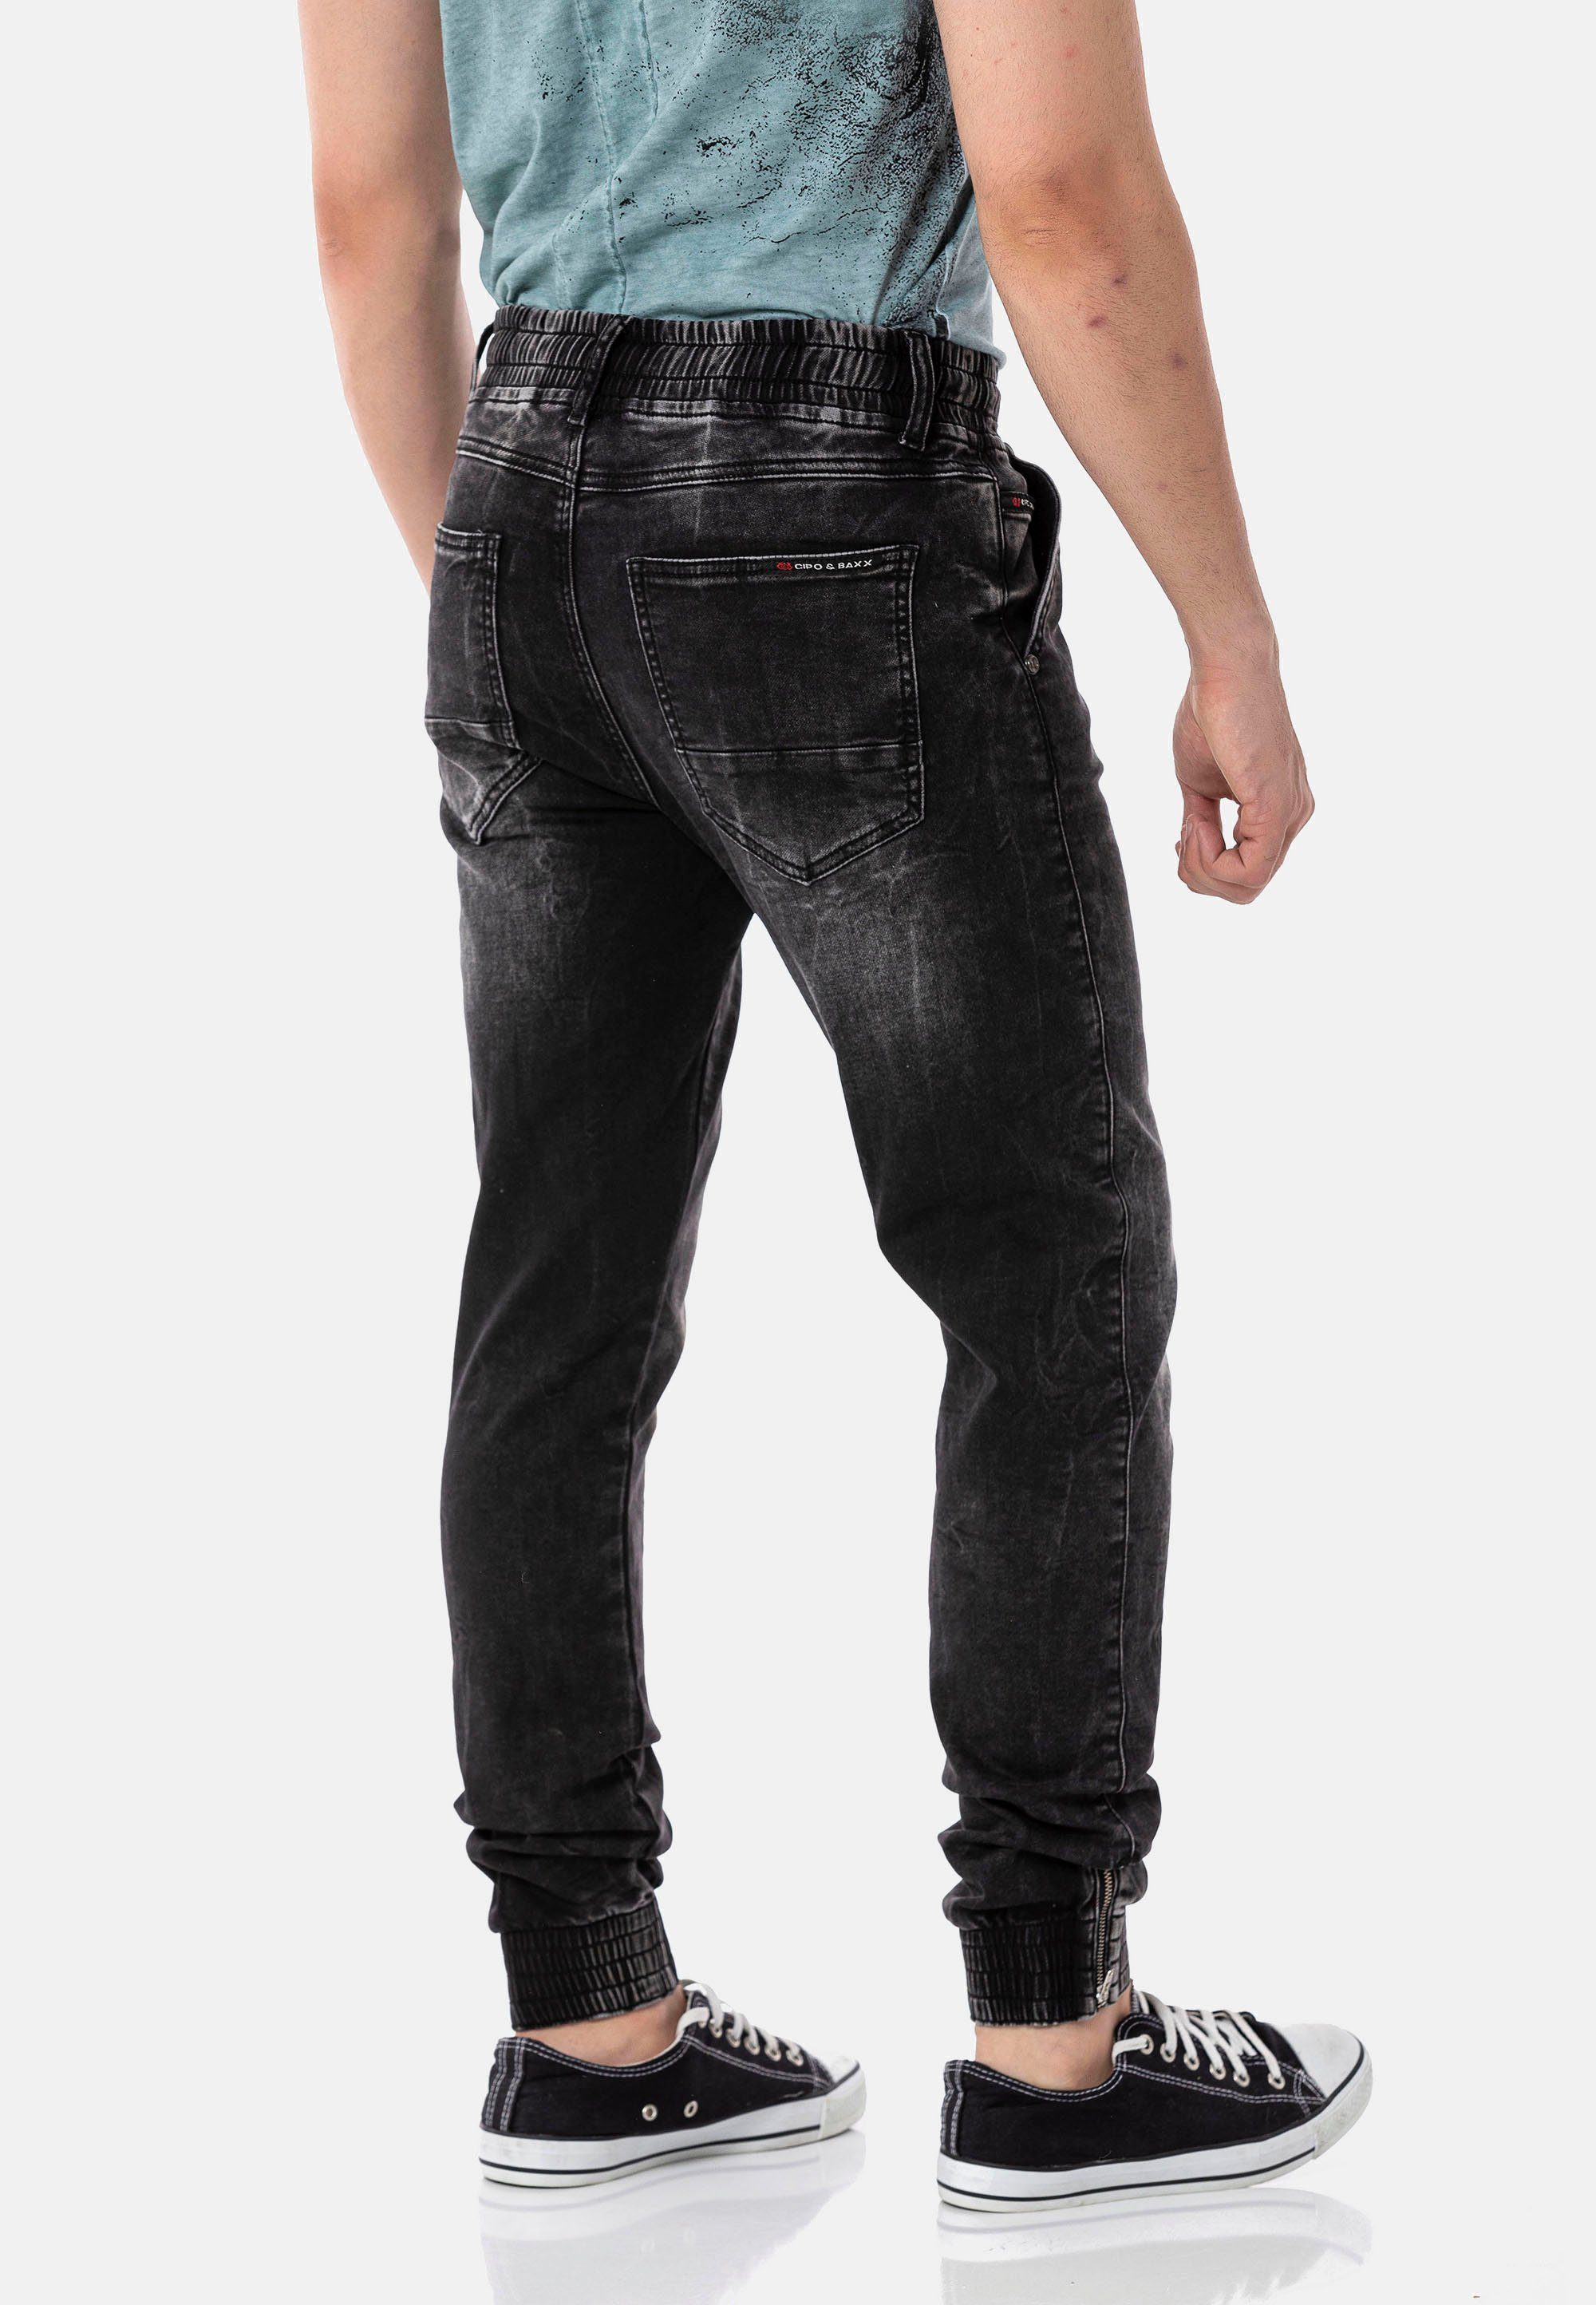 komfortablem mit schwarz & Dehnbund Baxx Cipo Jeans Bequeme